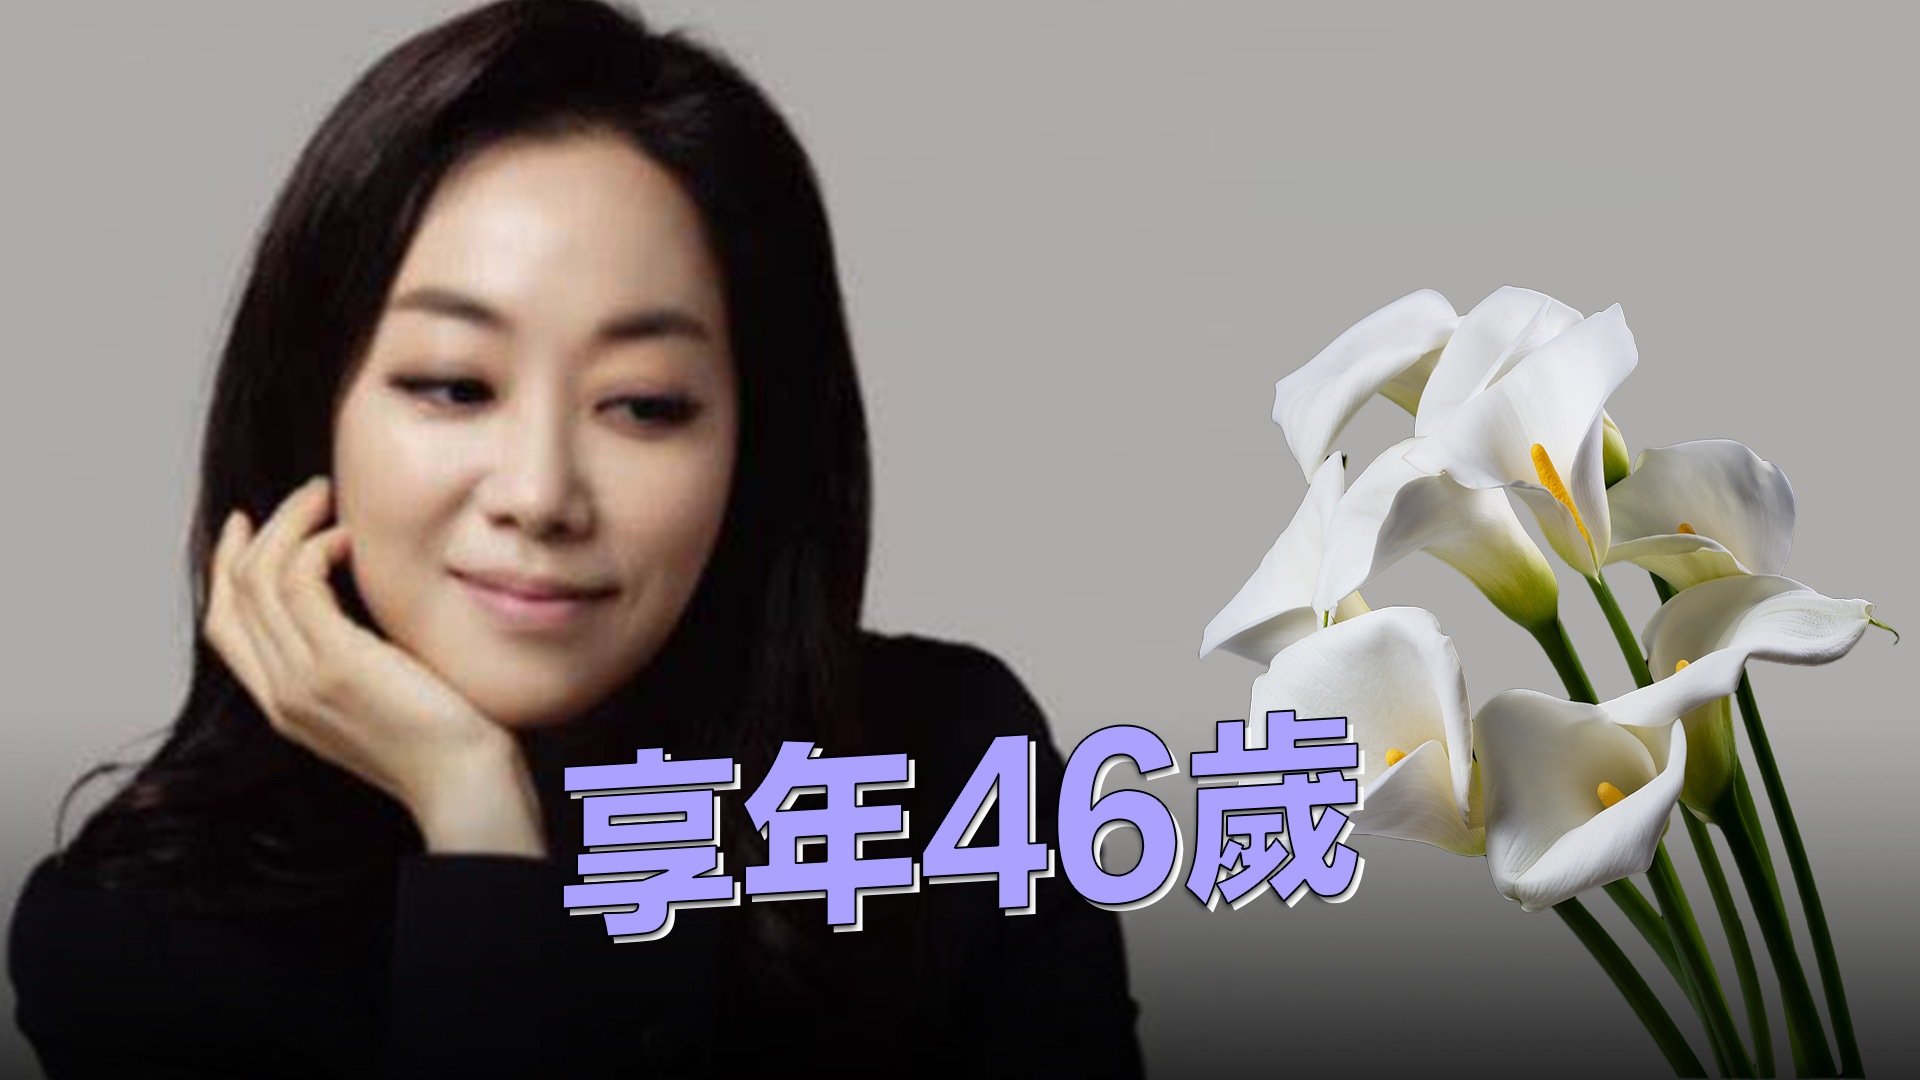 韓國女高音李尚恩開騷前暴斃 享年46歲